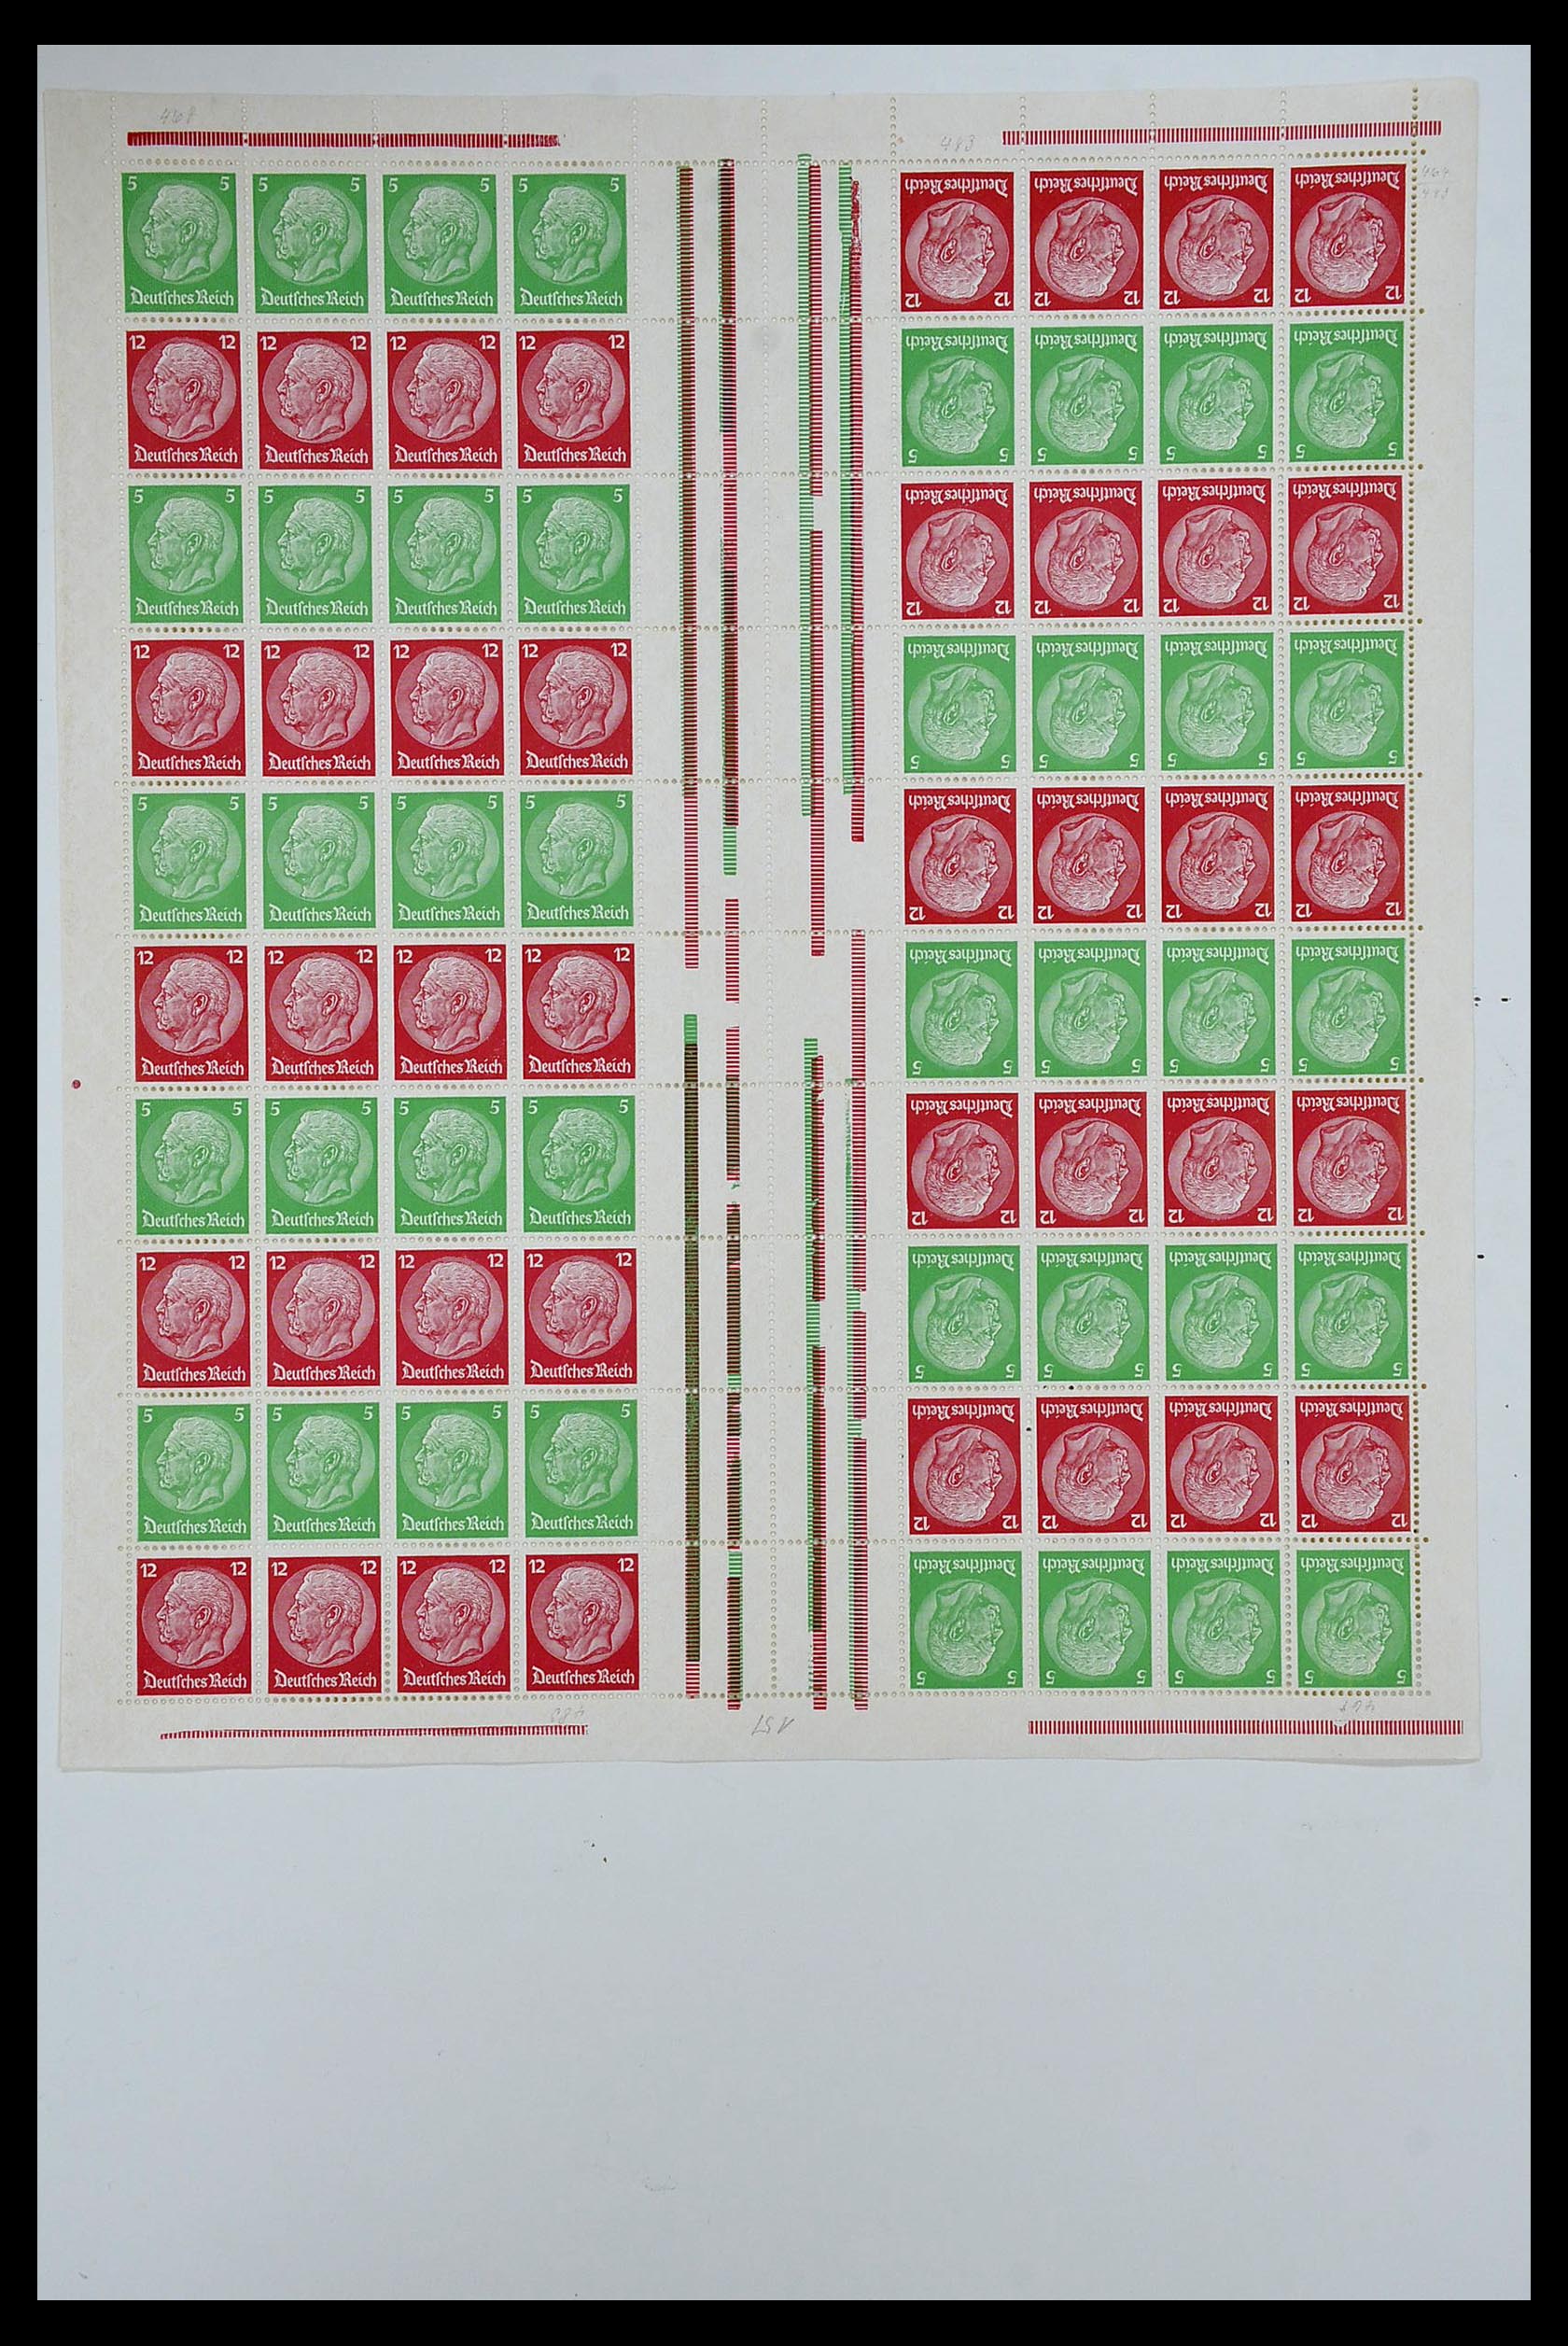 35075 001 - Stamp Collection 35075 German Reich Markenheftchenbogen 1933-1941.